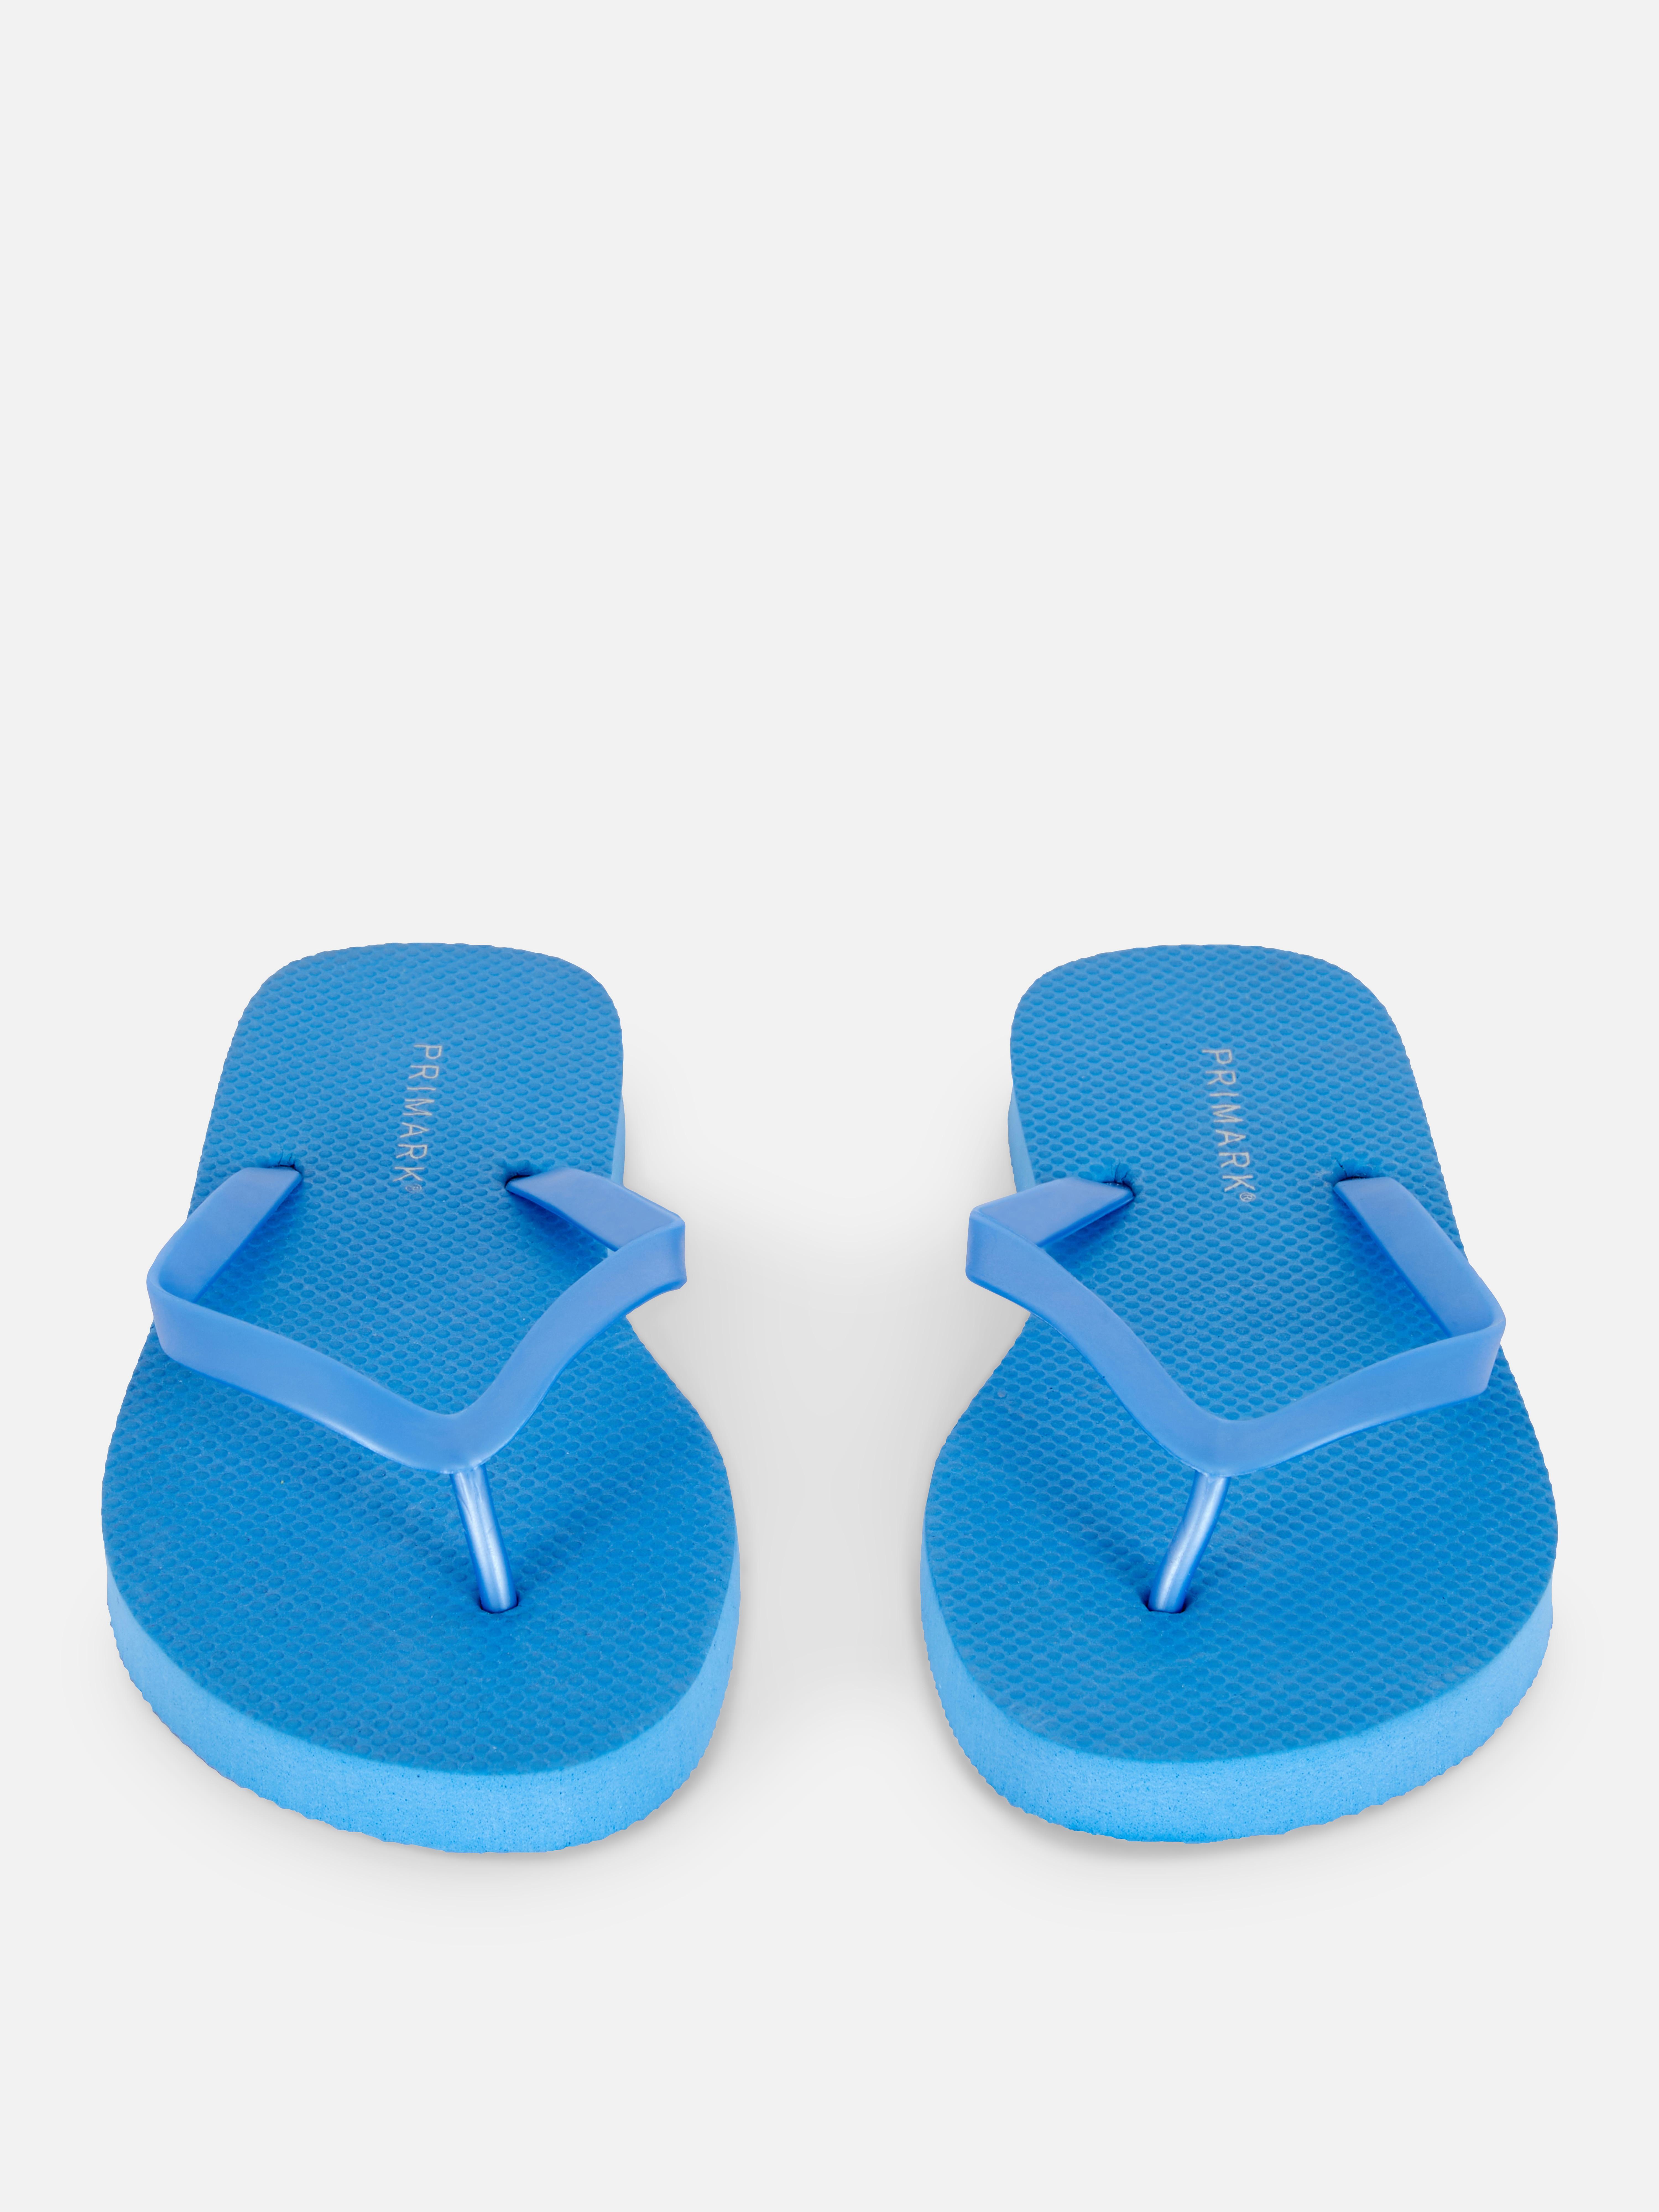 Chanclas planas básicas | Calzado de playa para mujer: chanclas y sandalias | Zapatos y botas para mujer | Nuestra línea moda femenina | Todos los productos | Primark